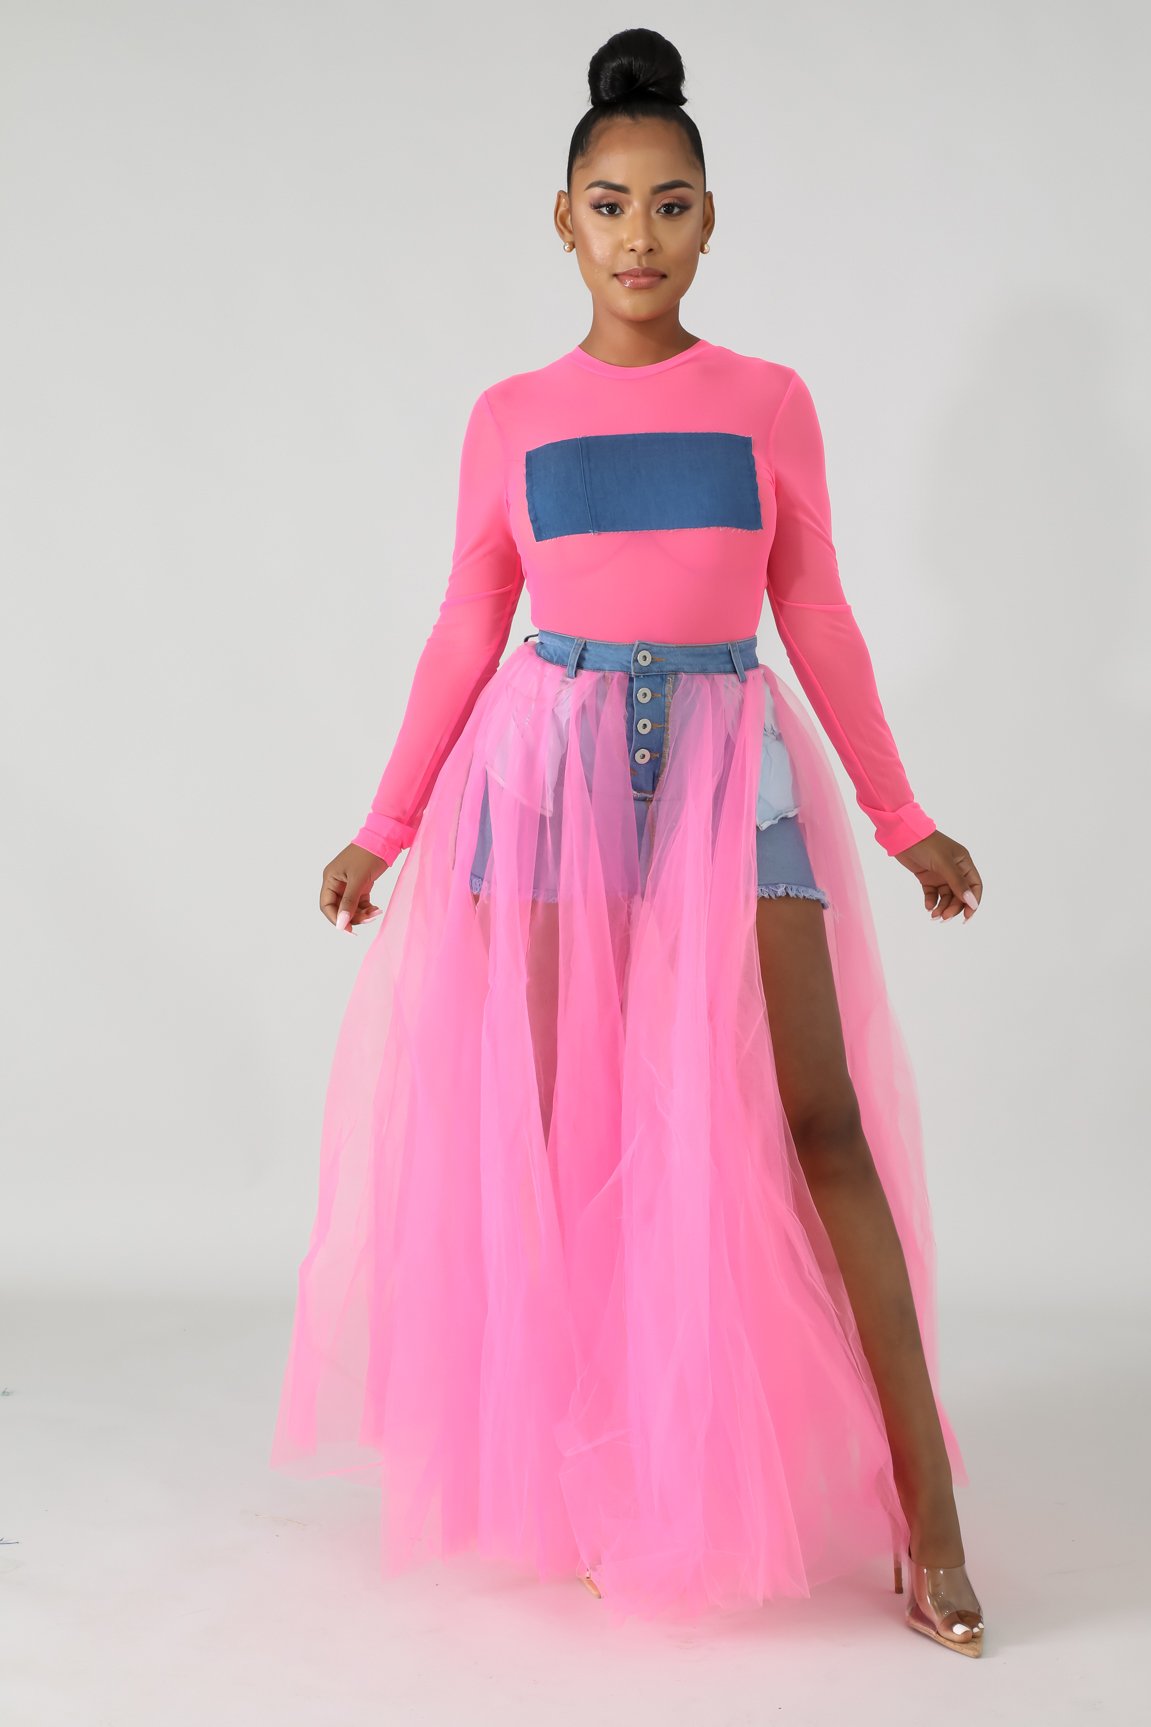 Raw Tulle Denim Maxi Skirt | GitiOnline